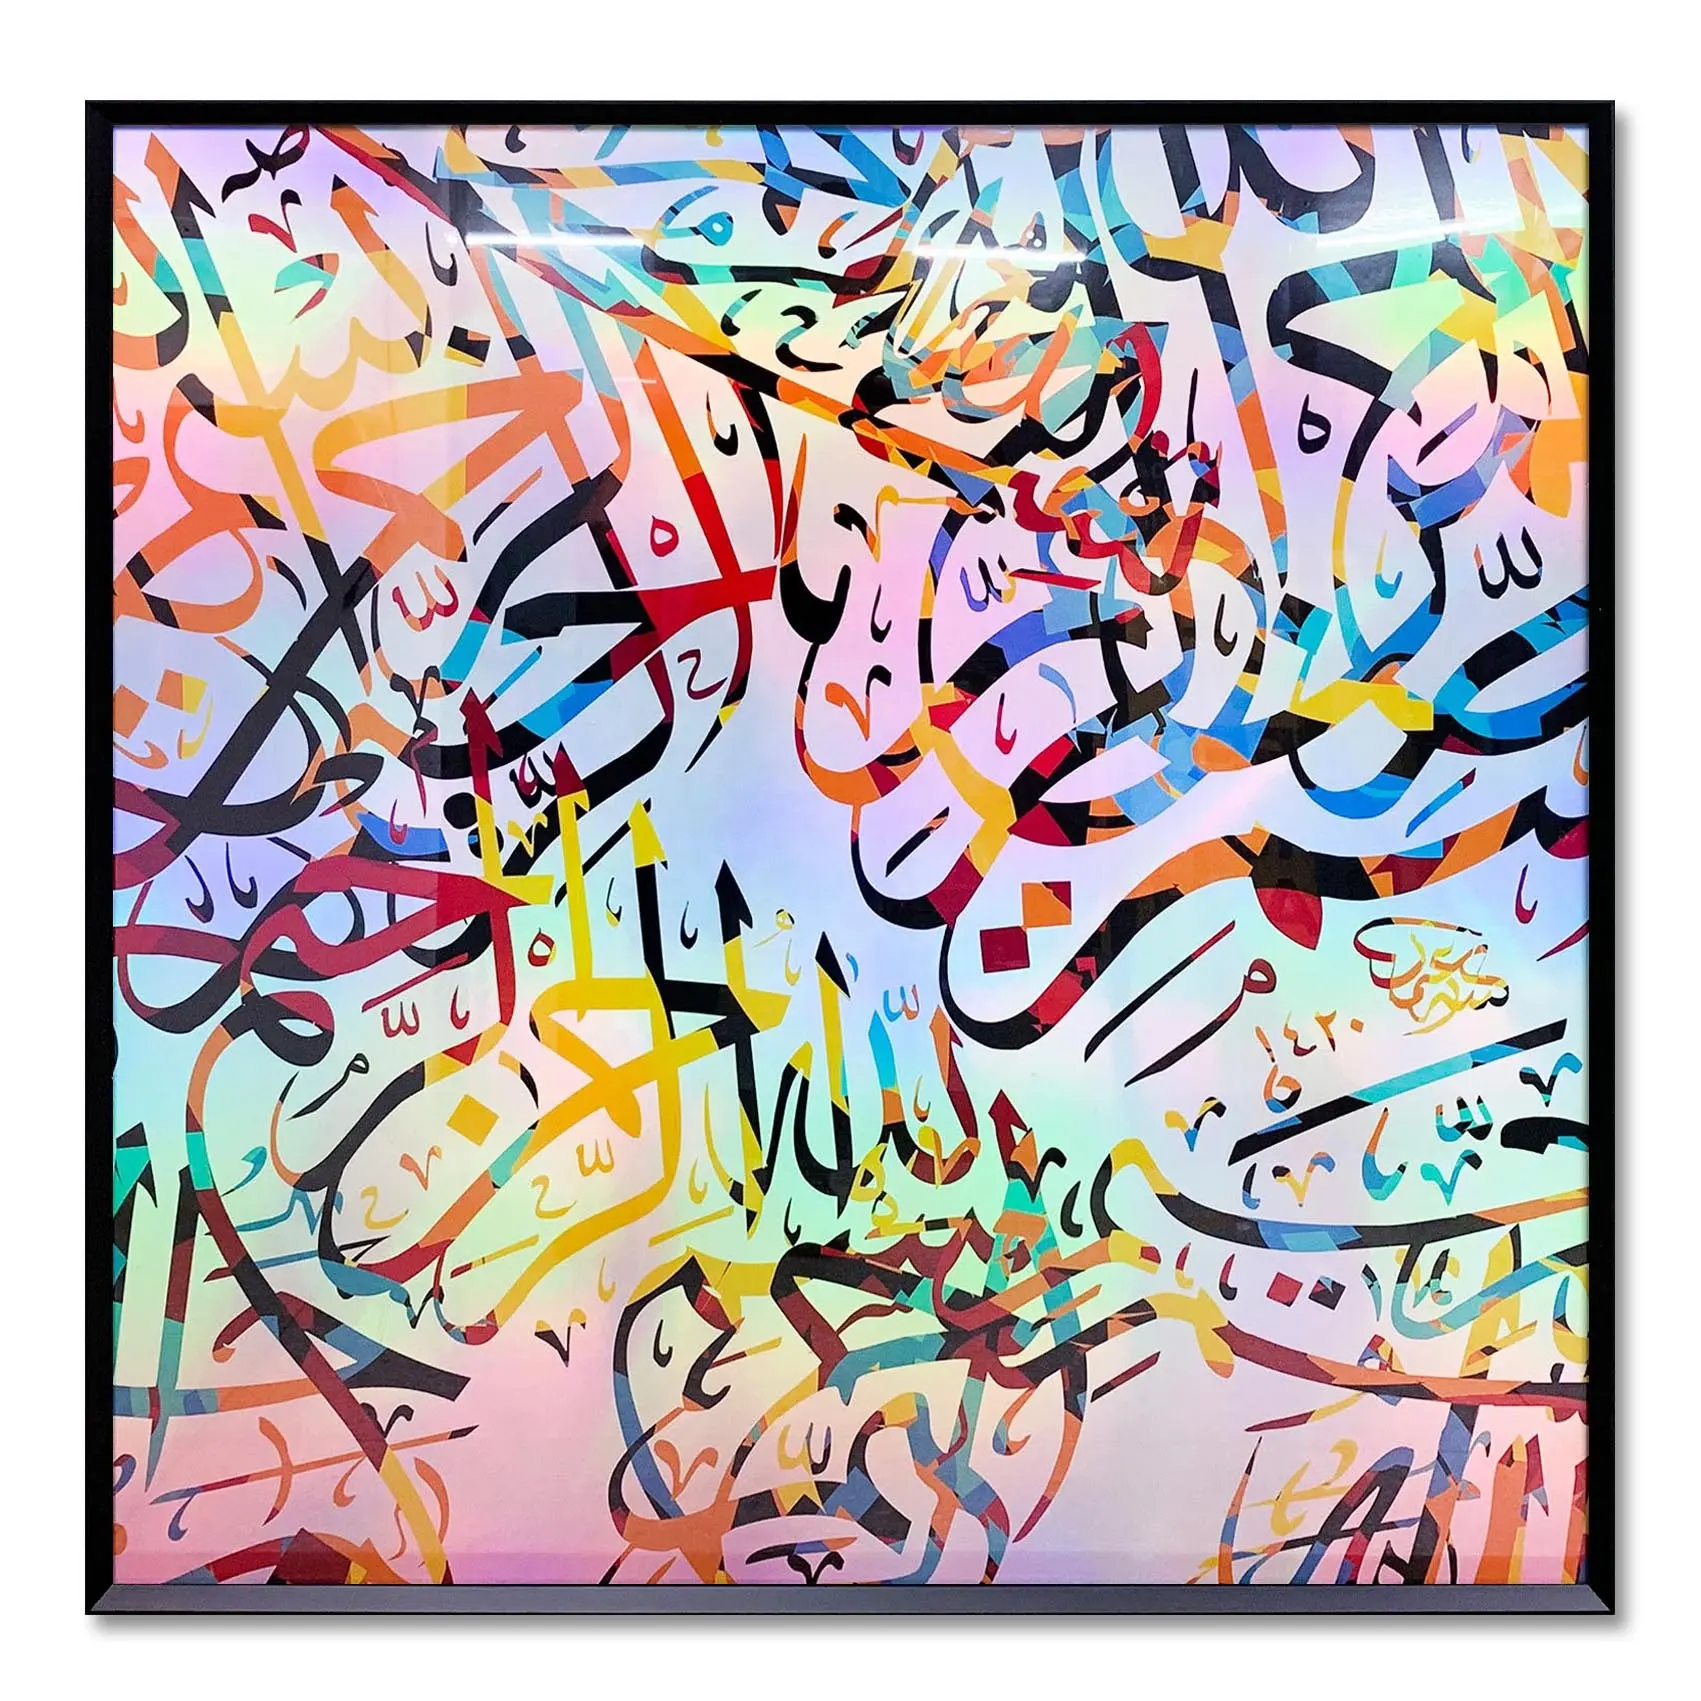 Arabo nuovo prodotto pittura arcobaleno stampa su PET Al-Islam wall art per la decorazione domestica musulmana